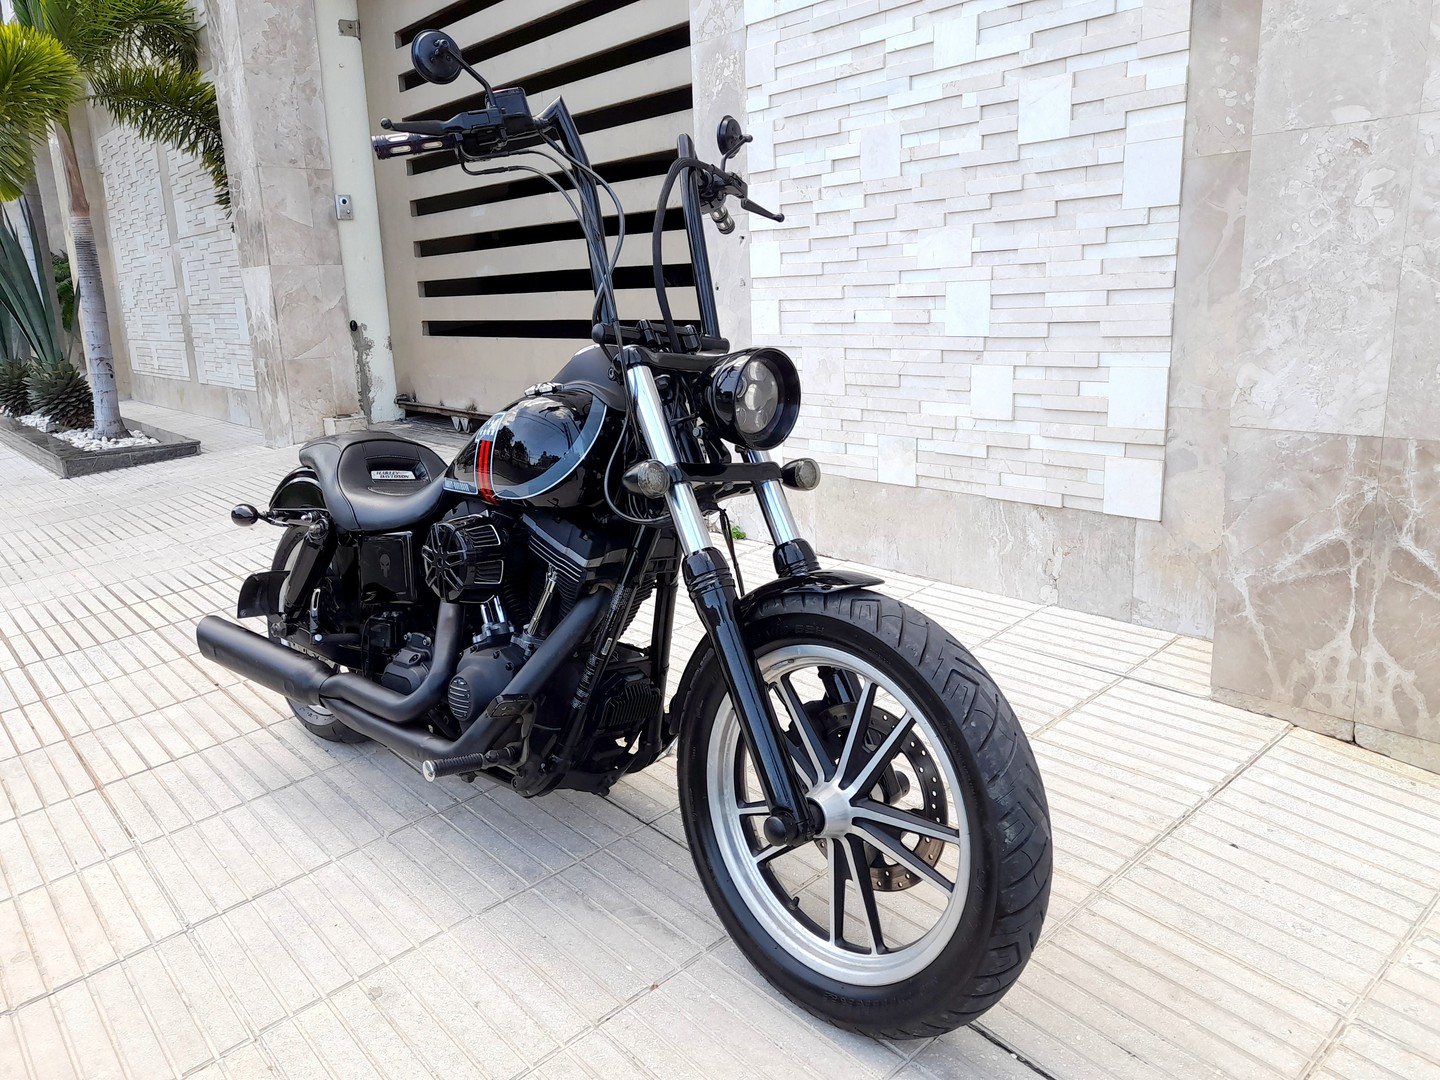 motores y pasolas - Harley Davidson Street Bob 2013 como nueva